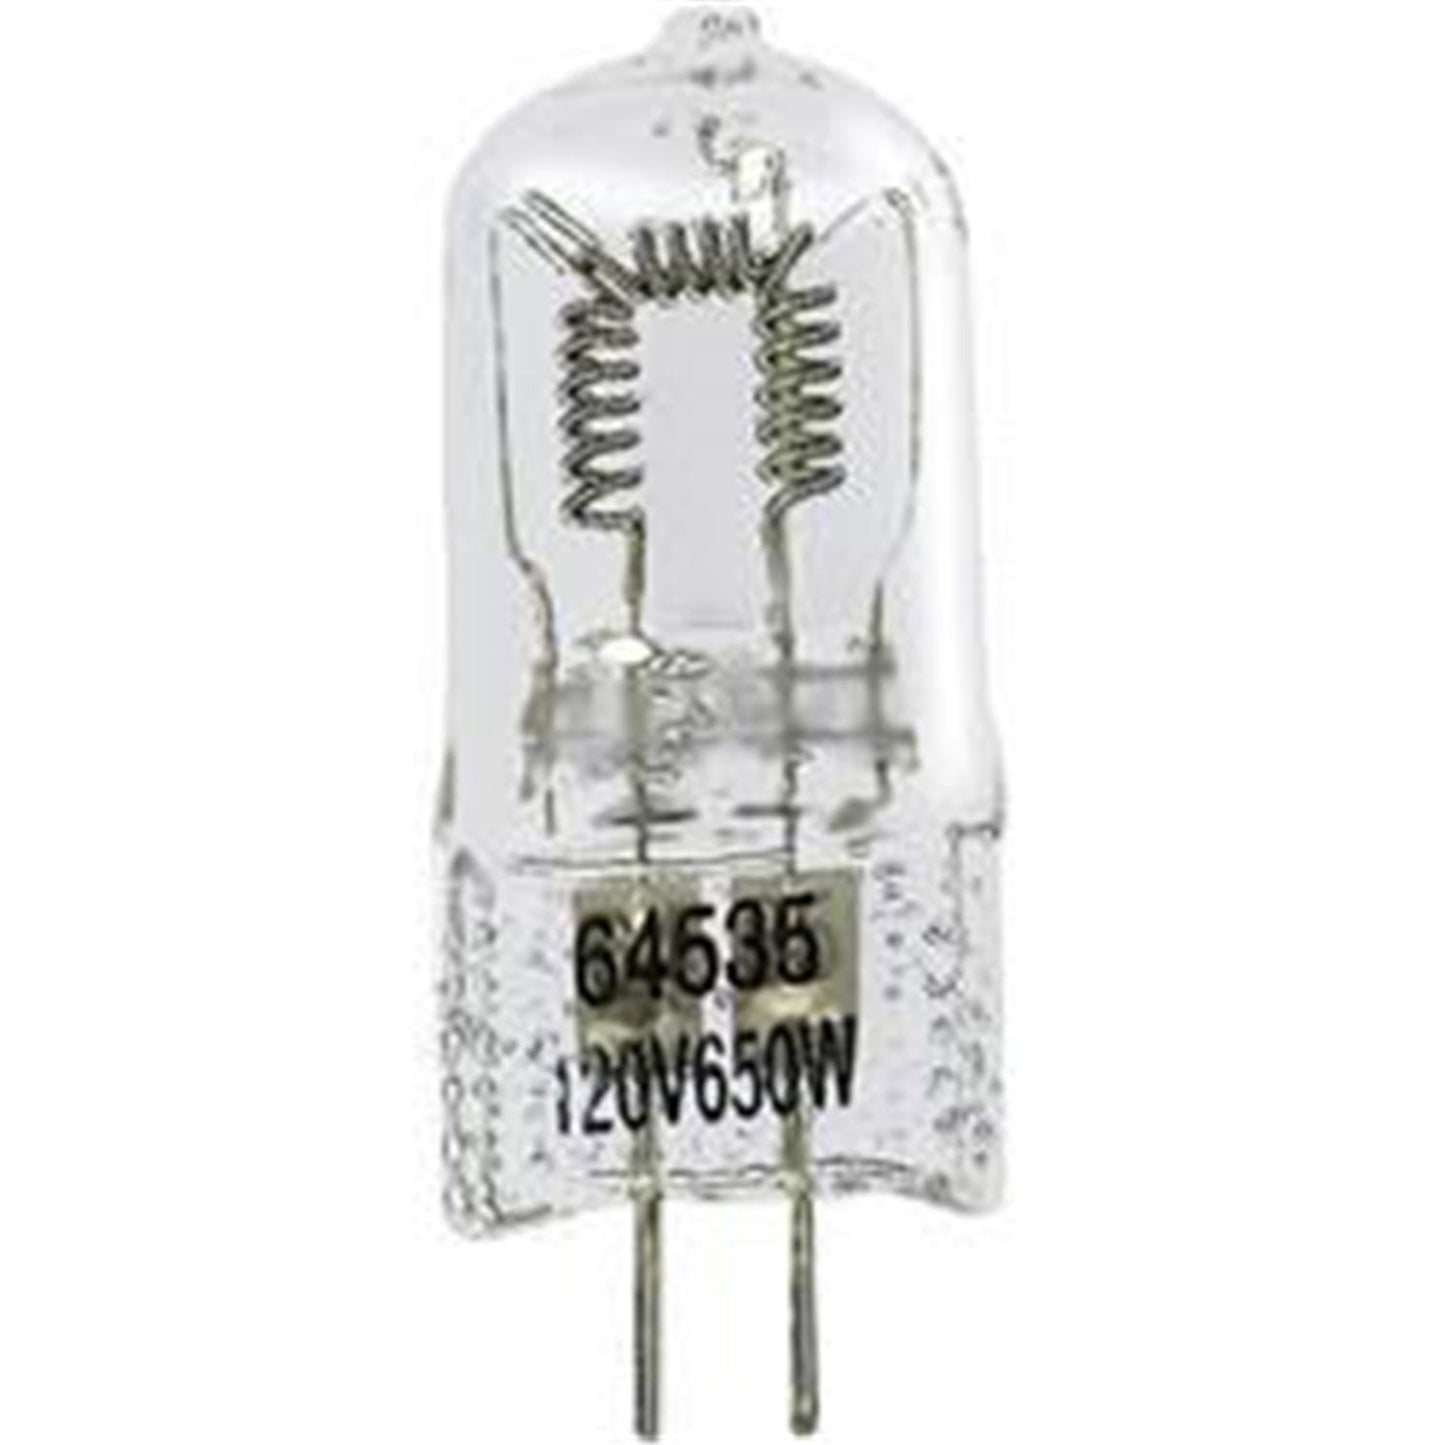 Chauvet 64535 120V-650-Watt Lamp For Stepper - ProSound and Stage Lighting